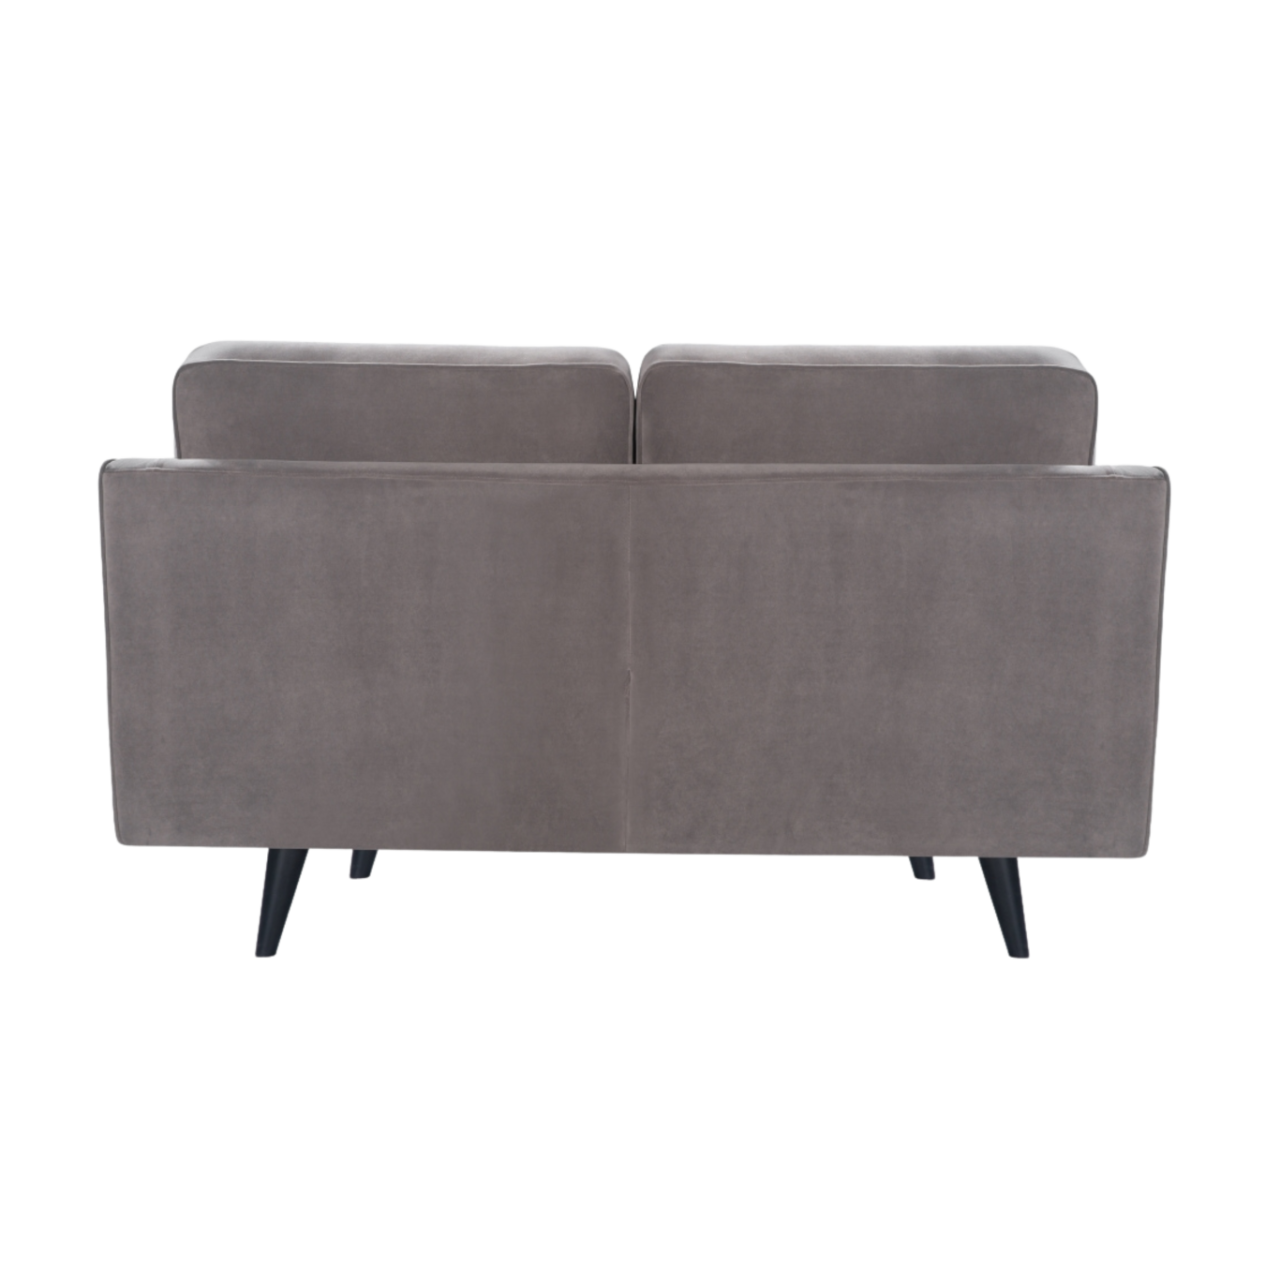 compact, modern 2 seater sofa in grey velvet